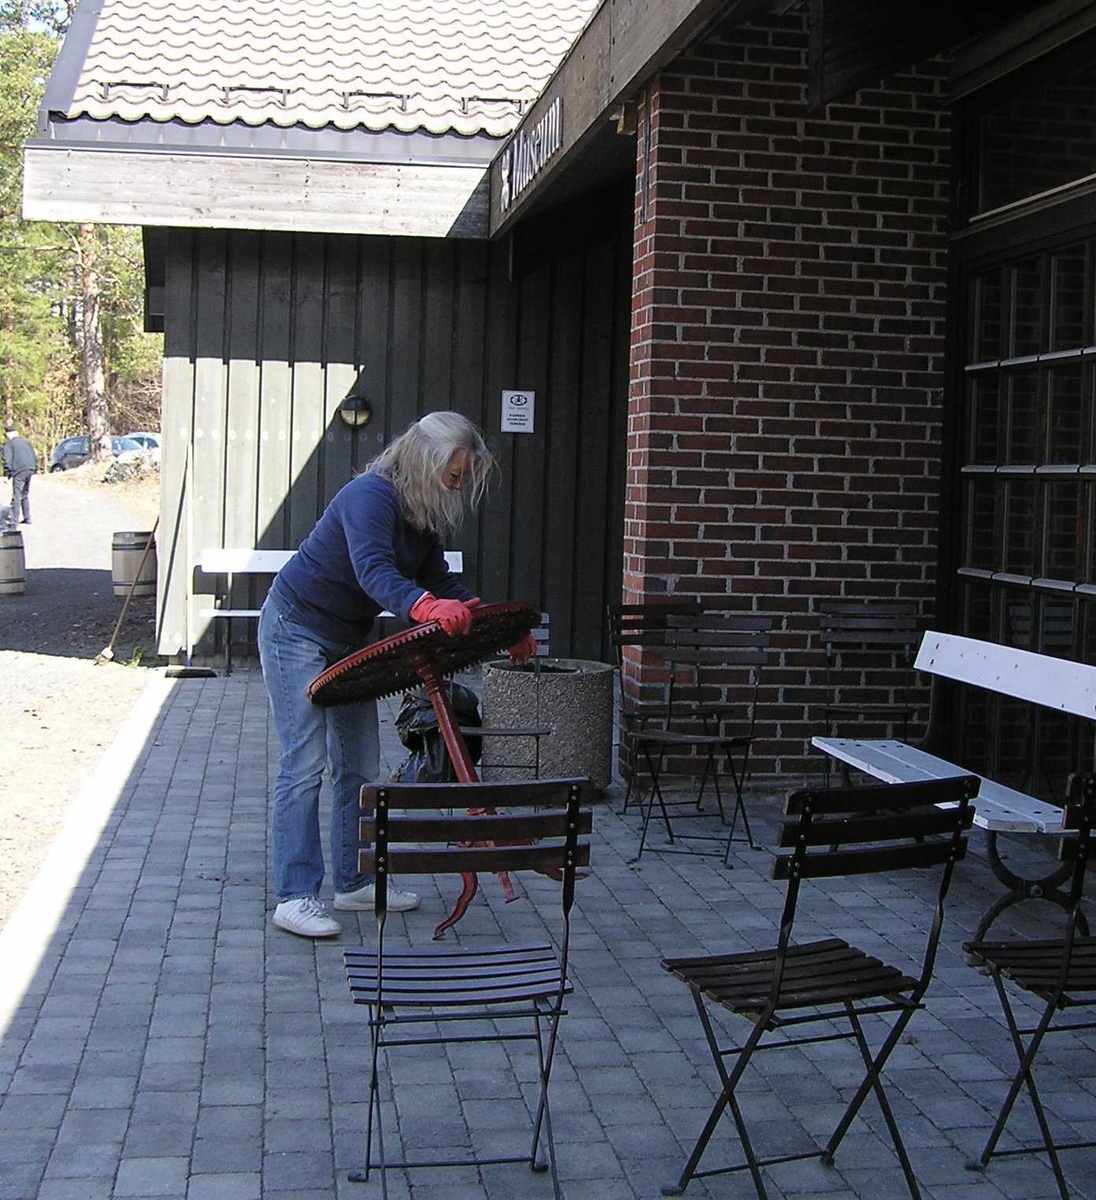 Berg - Kragerø museumsvenner ordner utenfor museet.
24.04.2010